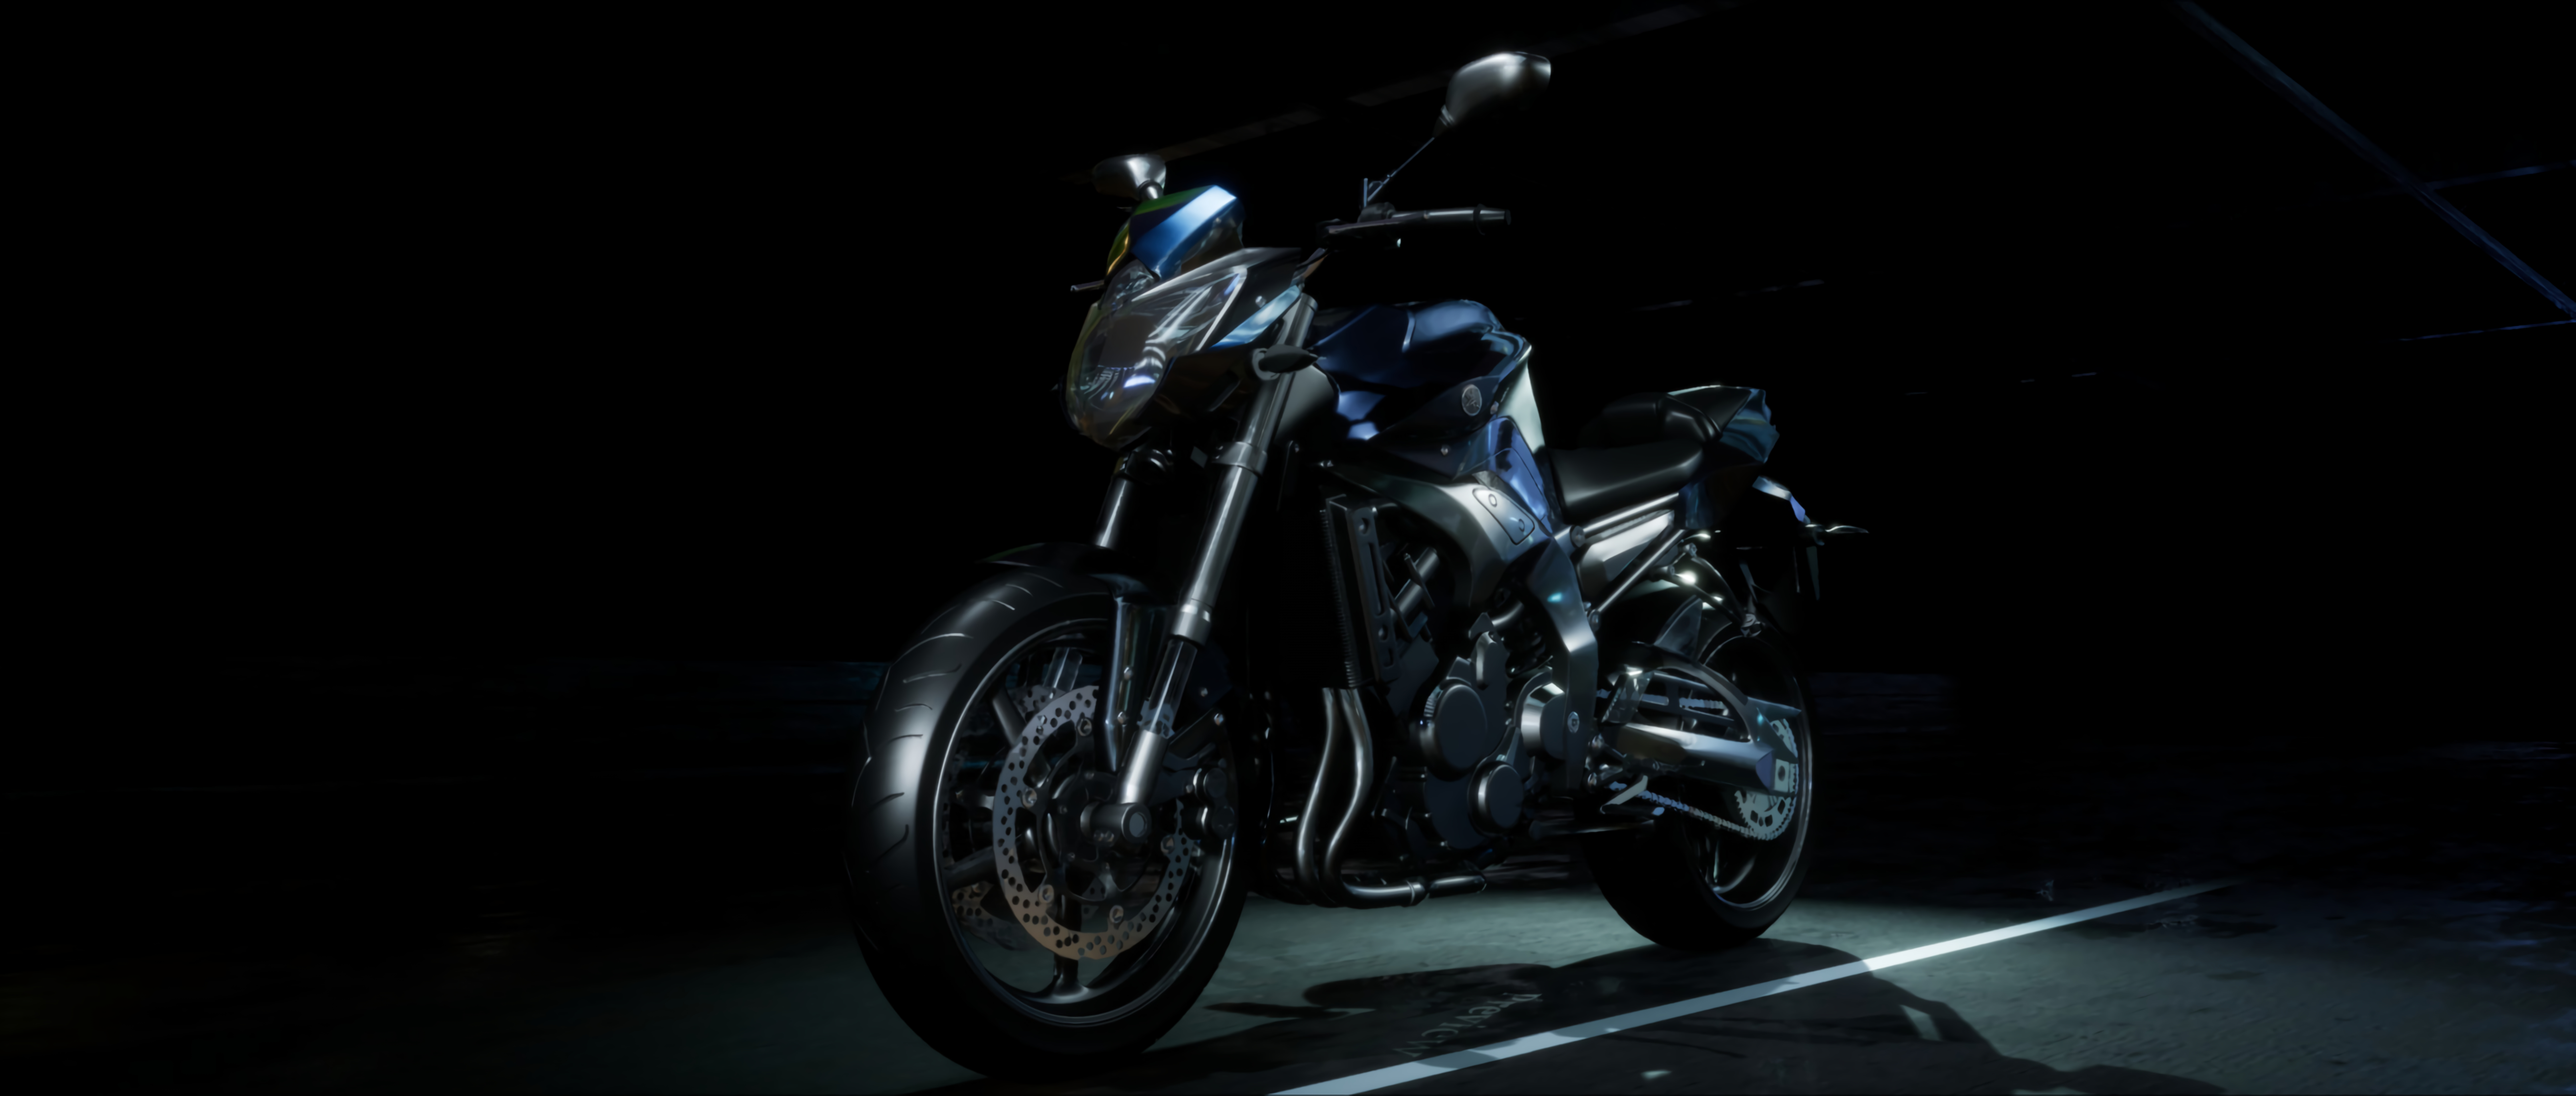 52172 免費下載壁紙 摩托车, 自行车, 黑暗的, 黑暗, 侧面图, 从一个视图到另一个, 运动的, 运动型 屏保和圖片